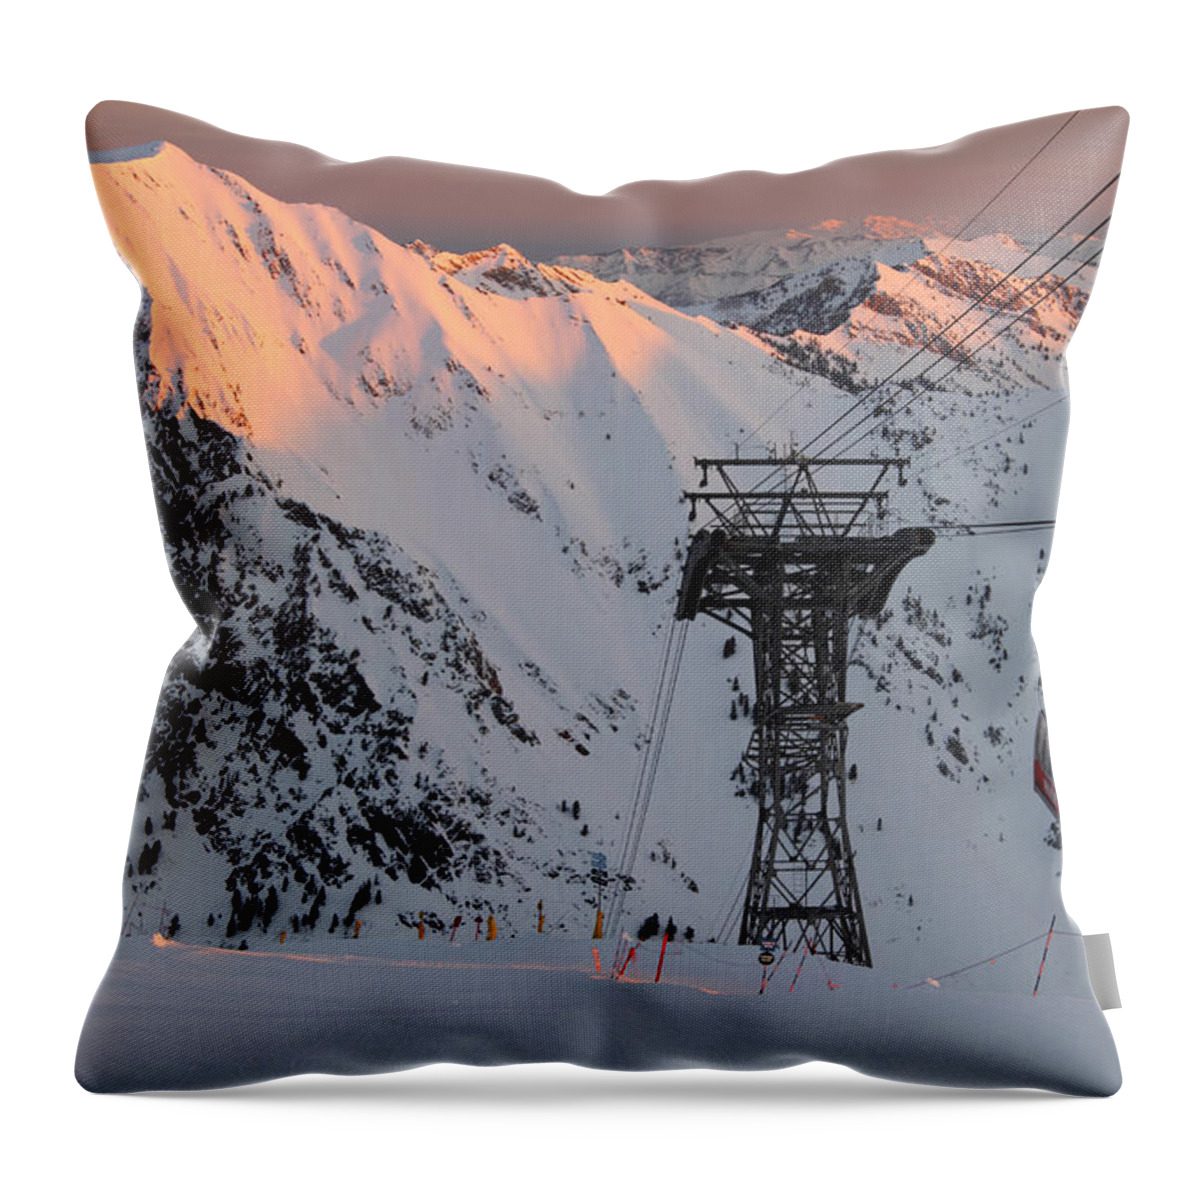 Landscape Throw Pillow featuring the photograph Snowbird Sunrise Tram by Brett Pelletier